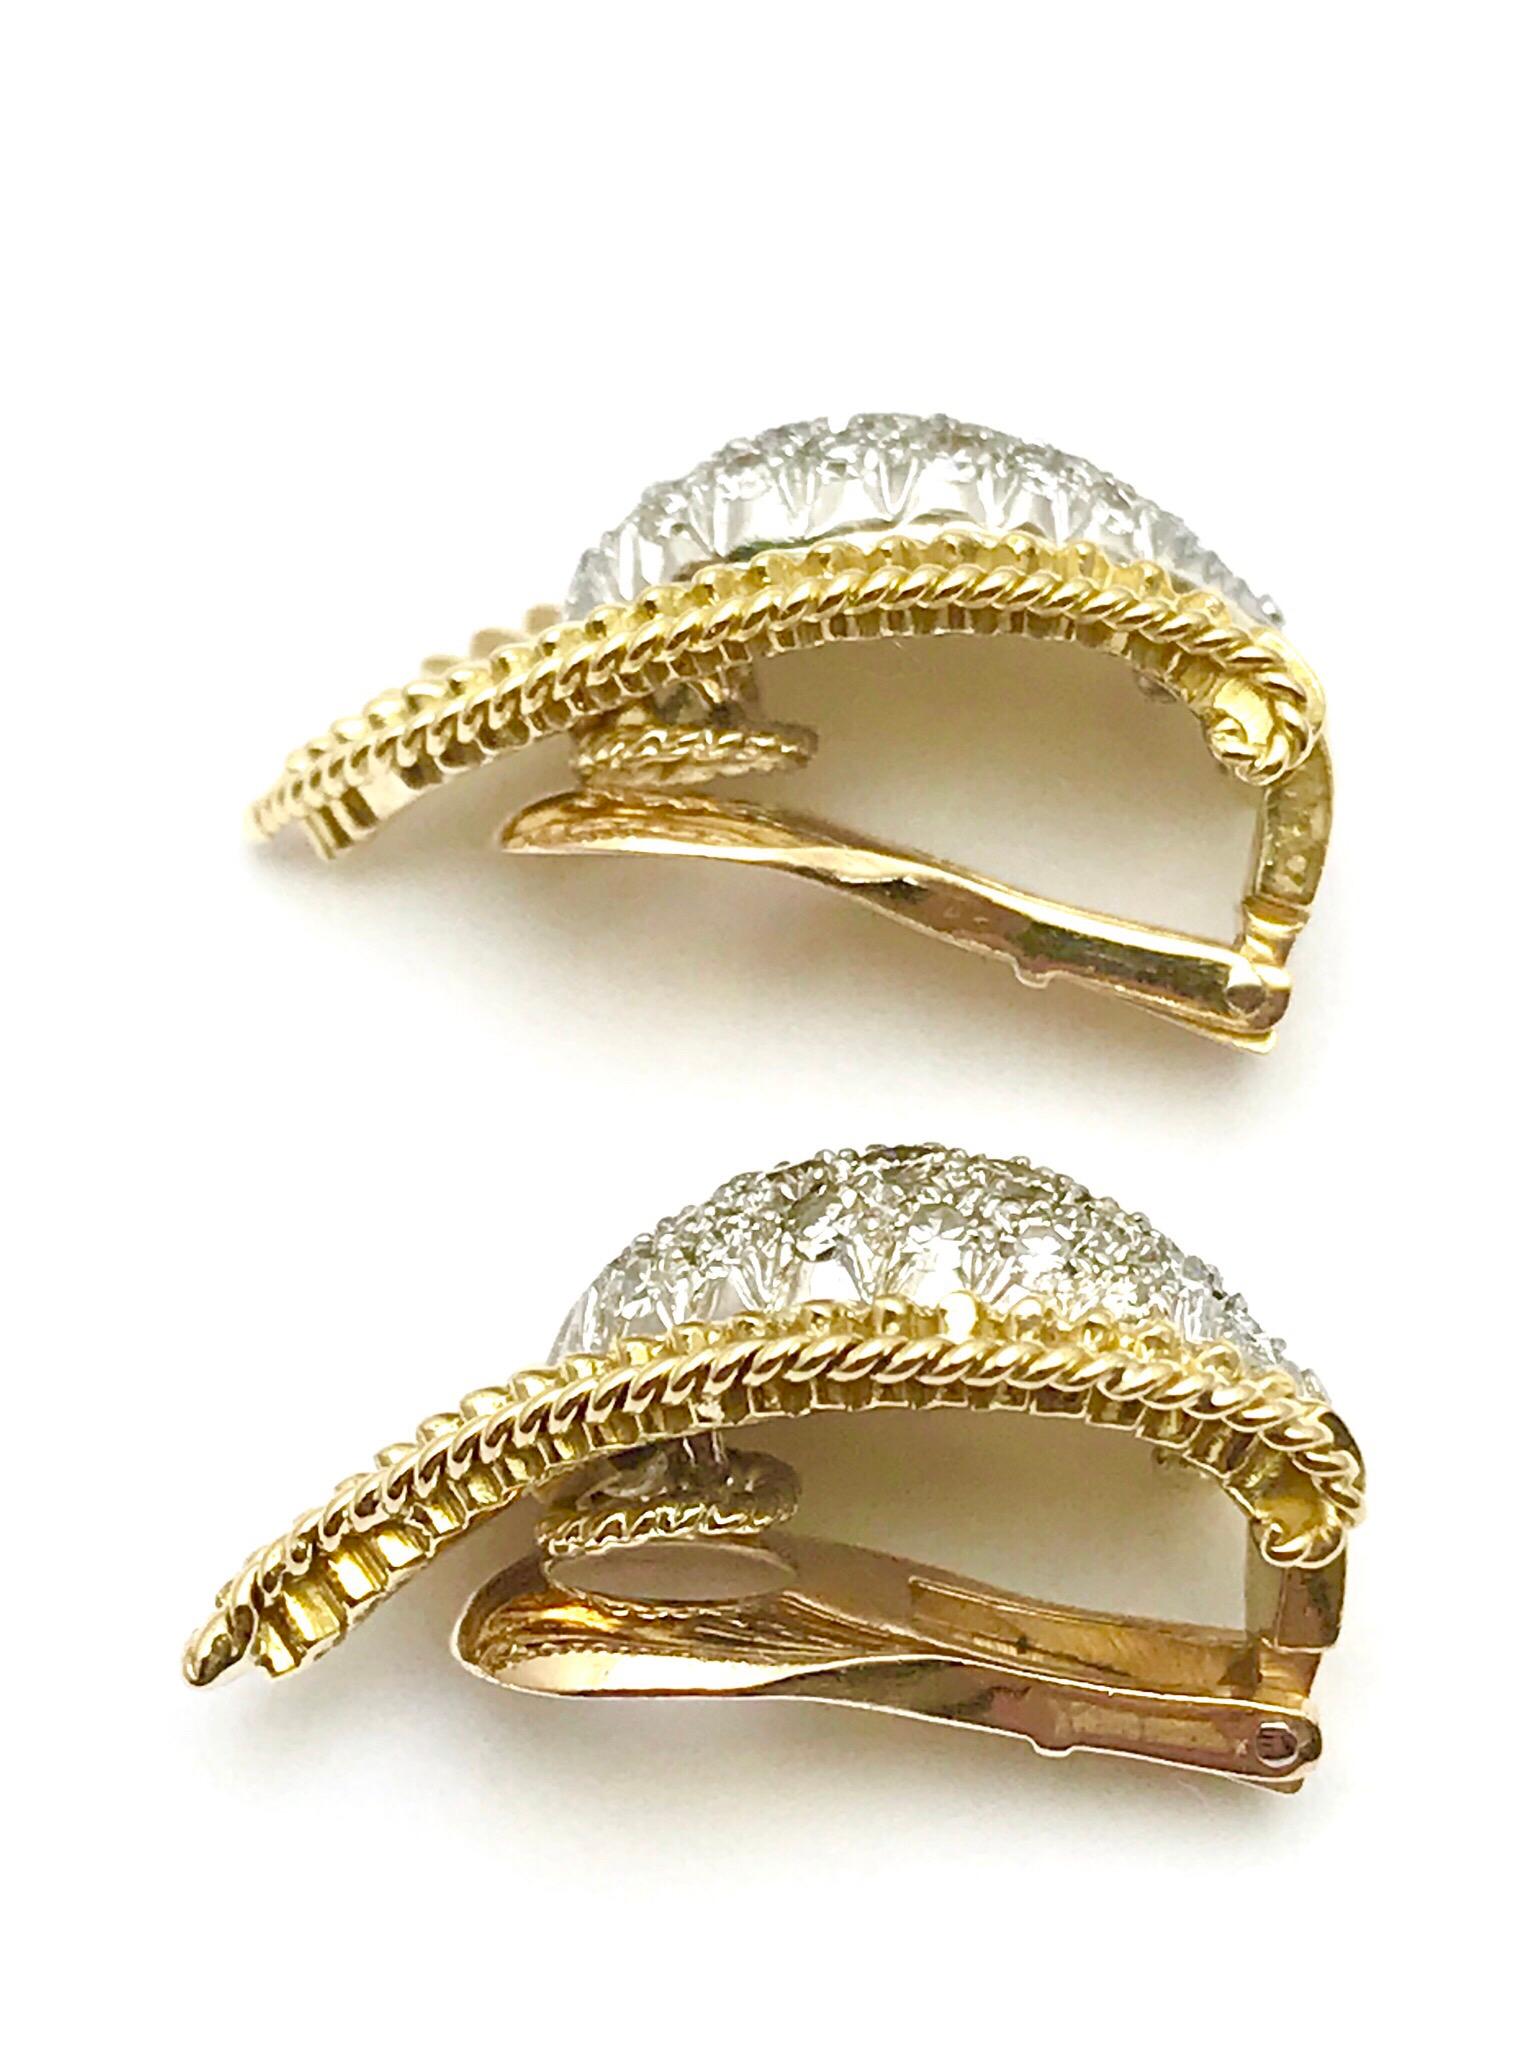 Ein Paar Clip-Ohrringe aus 18 Karat Gelbgold mit Diamanten und Blättern.  Der Diamant in der Mitte ist gepflastert und von strukturiertem Gold mit einer Kordelkante umgeben.  Es gibt 40 runde, facettierte Diamanten mit einem Gesamtgewicht von 0,90